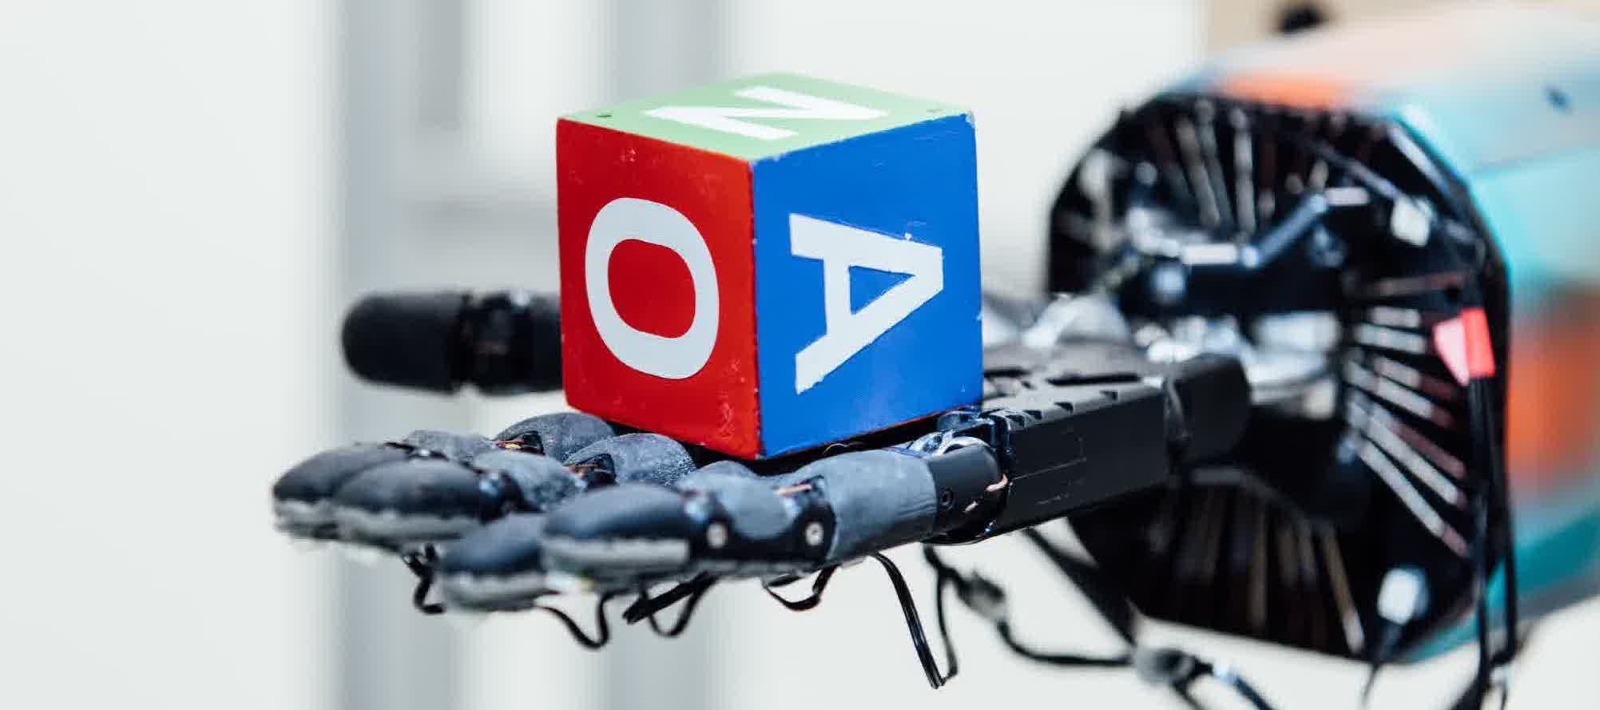 La main robotisée conçue par l'organisation à but non lucratif OpenAI est capable d'apprendre toute seule à manipuler un objet grâce à une intelligence artificielle qui réalise des simulations à partir de légères modifications de couleurs, de poids ou de taille, sur l'objet en question. © OpenAI